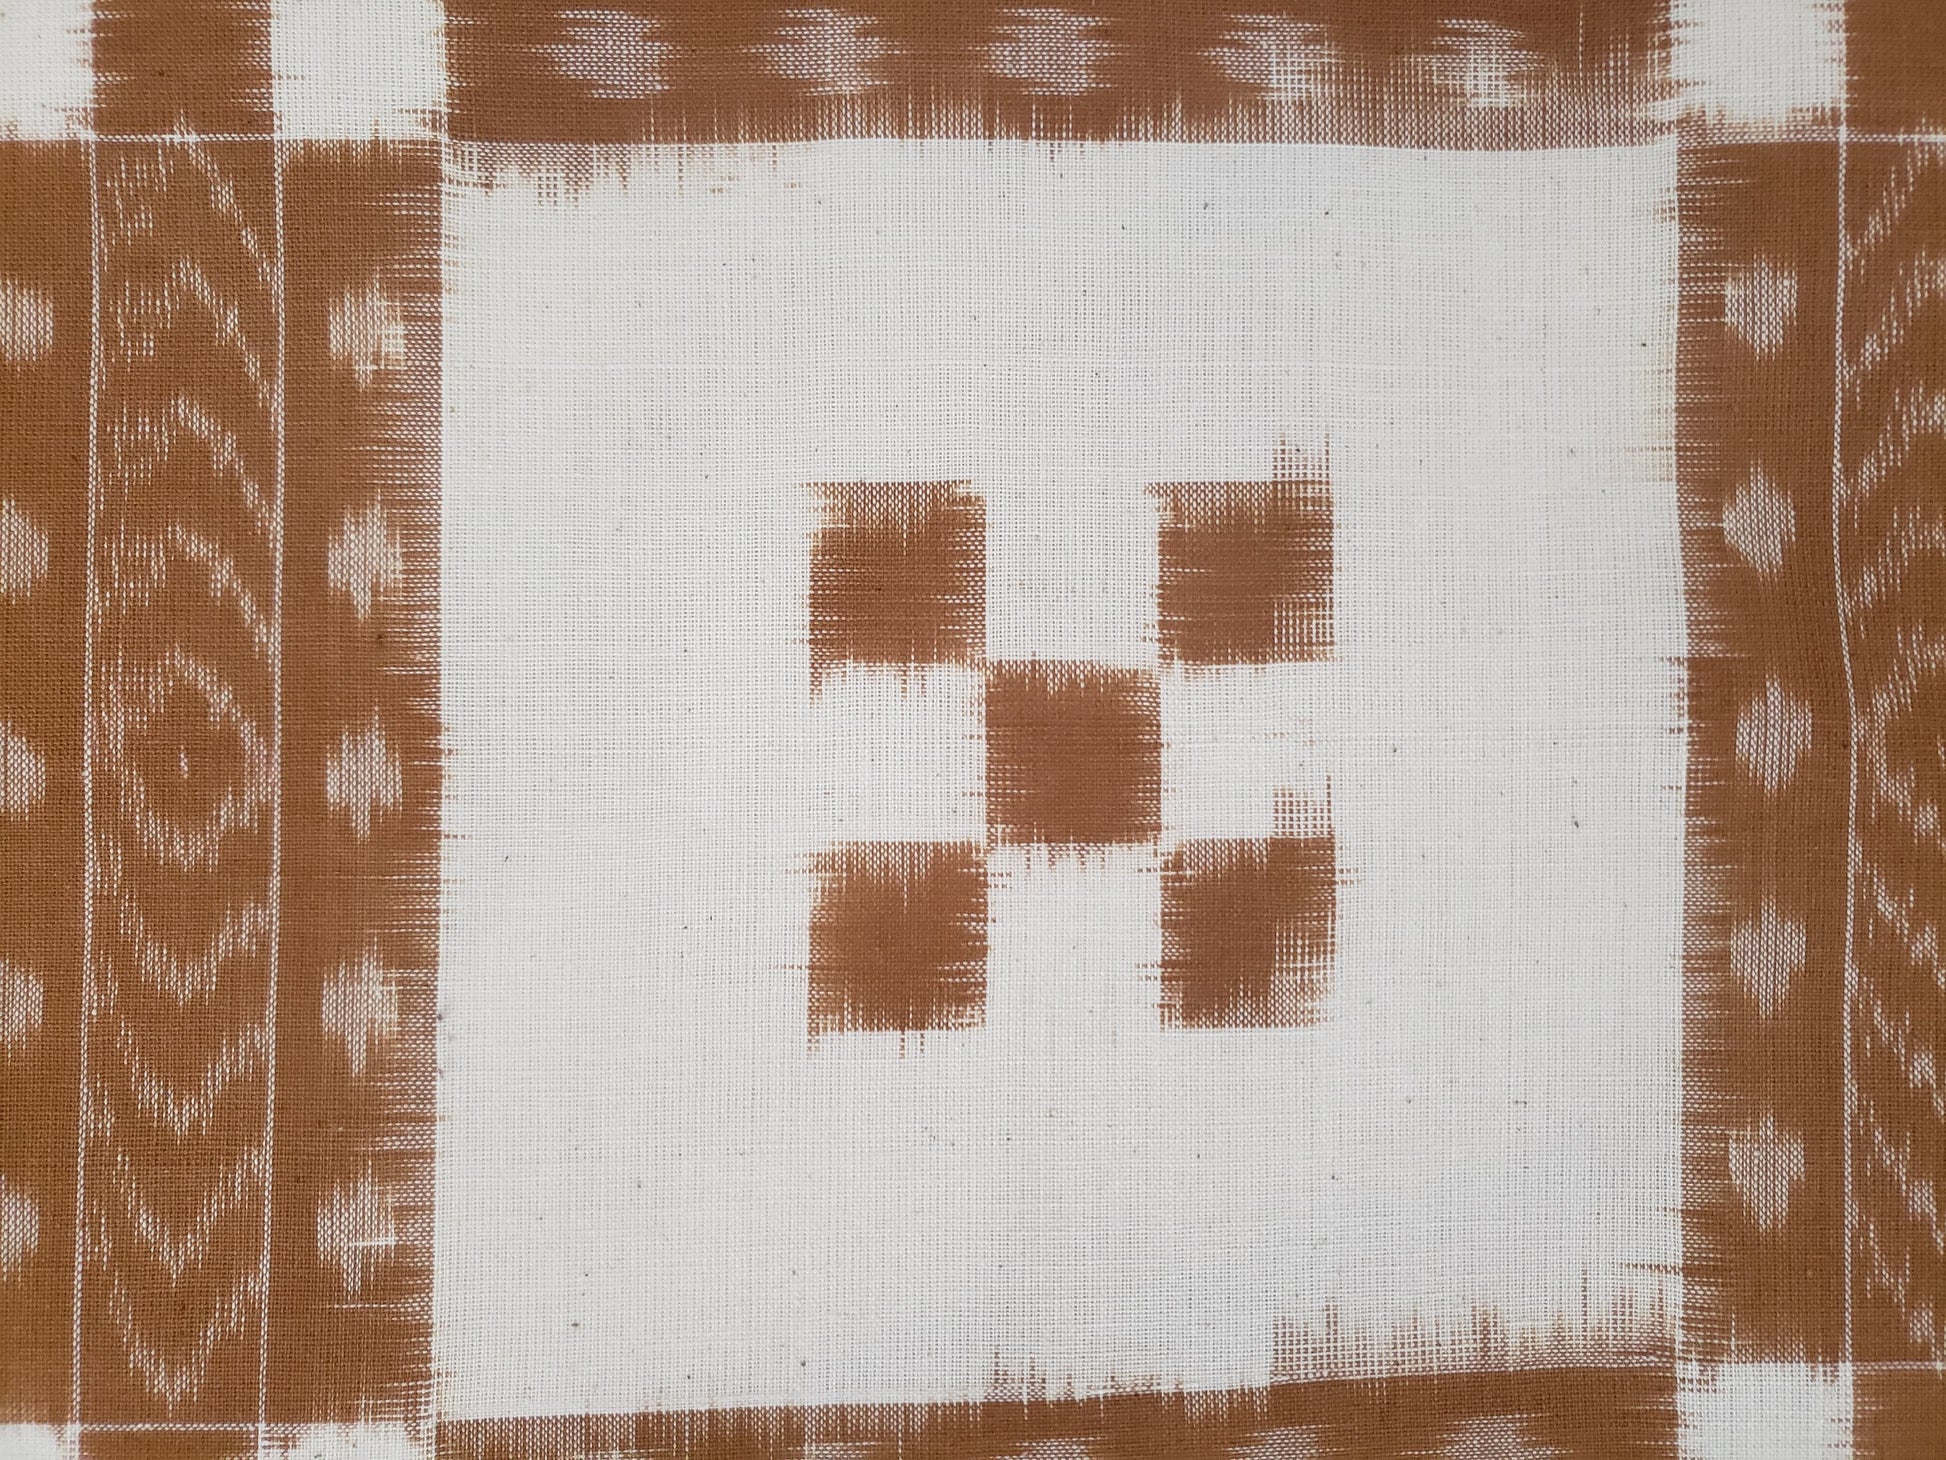 Colcha en manta de algodón tejida en telar formando finos patrones geométricos.